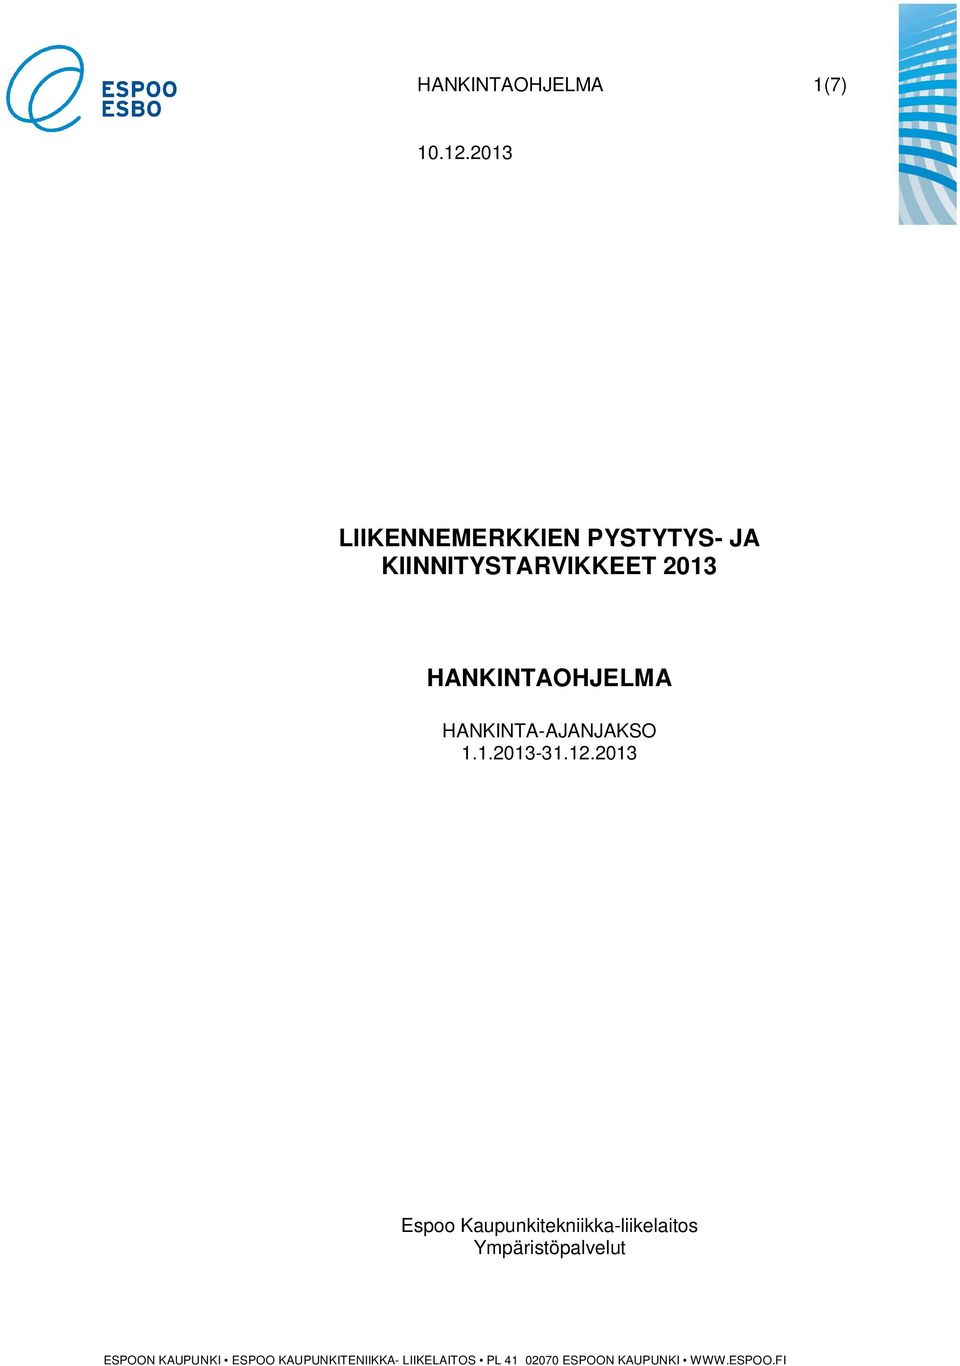 HANKINTAOHJELMA HANKINTA-AJANJAKSO 1.1.2013-31.12.